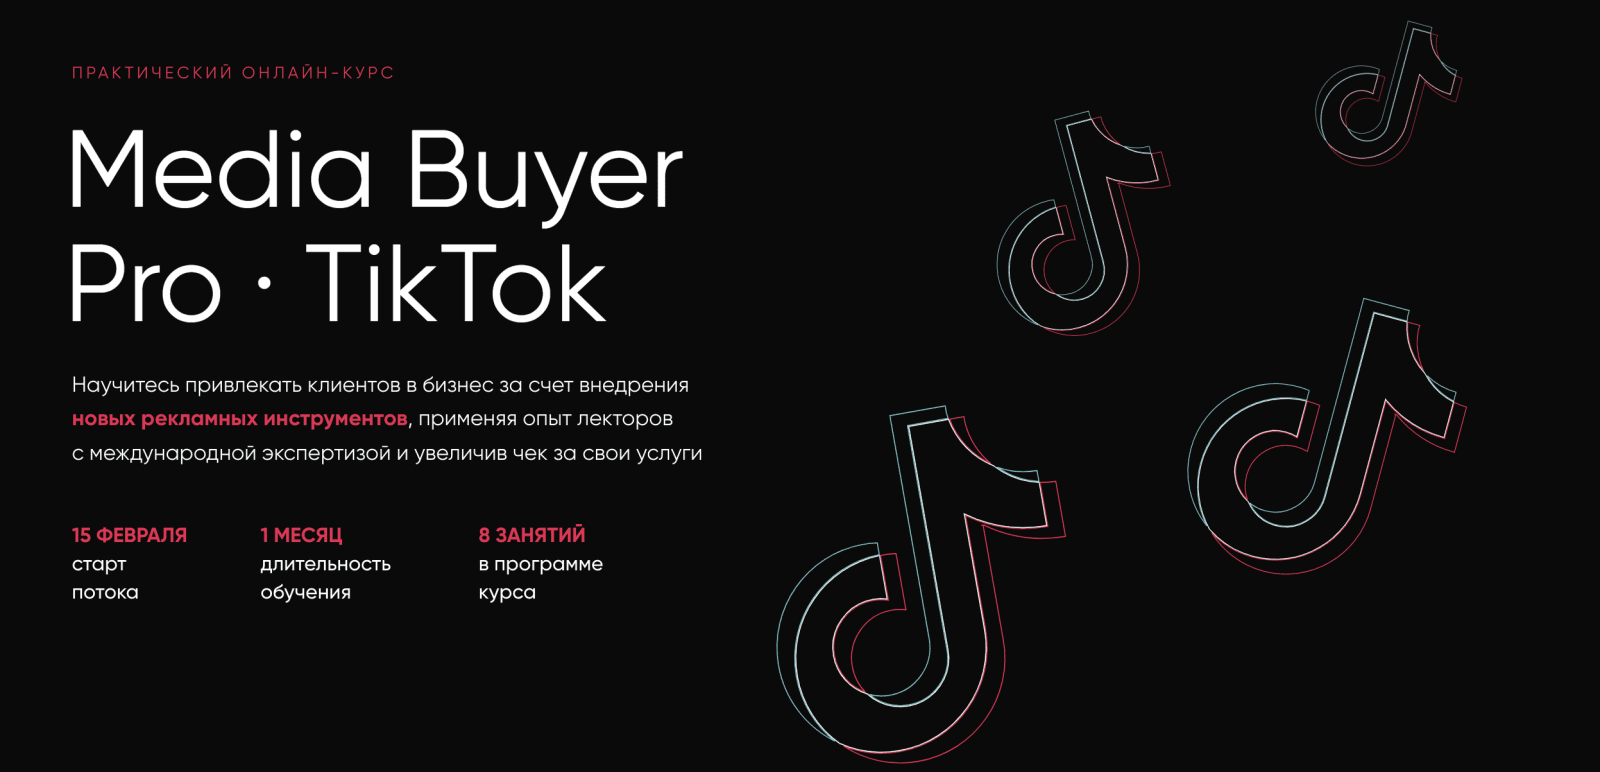 Изображение [Targetorium] Media Buyer Pro. TikTok (2021) в посте 250481